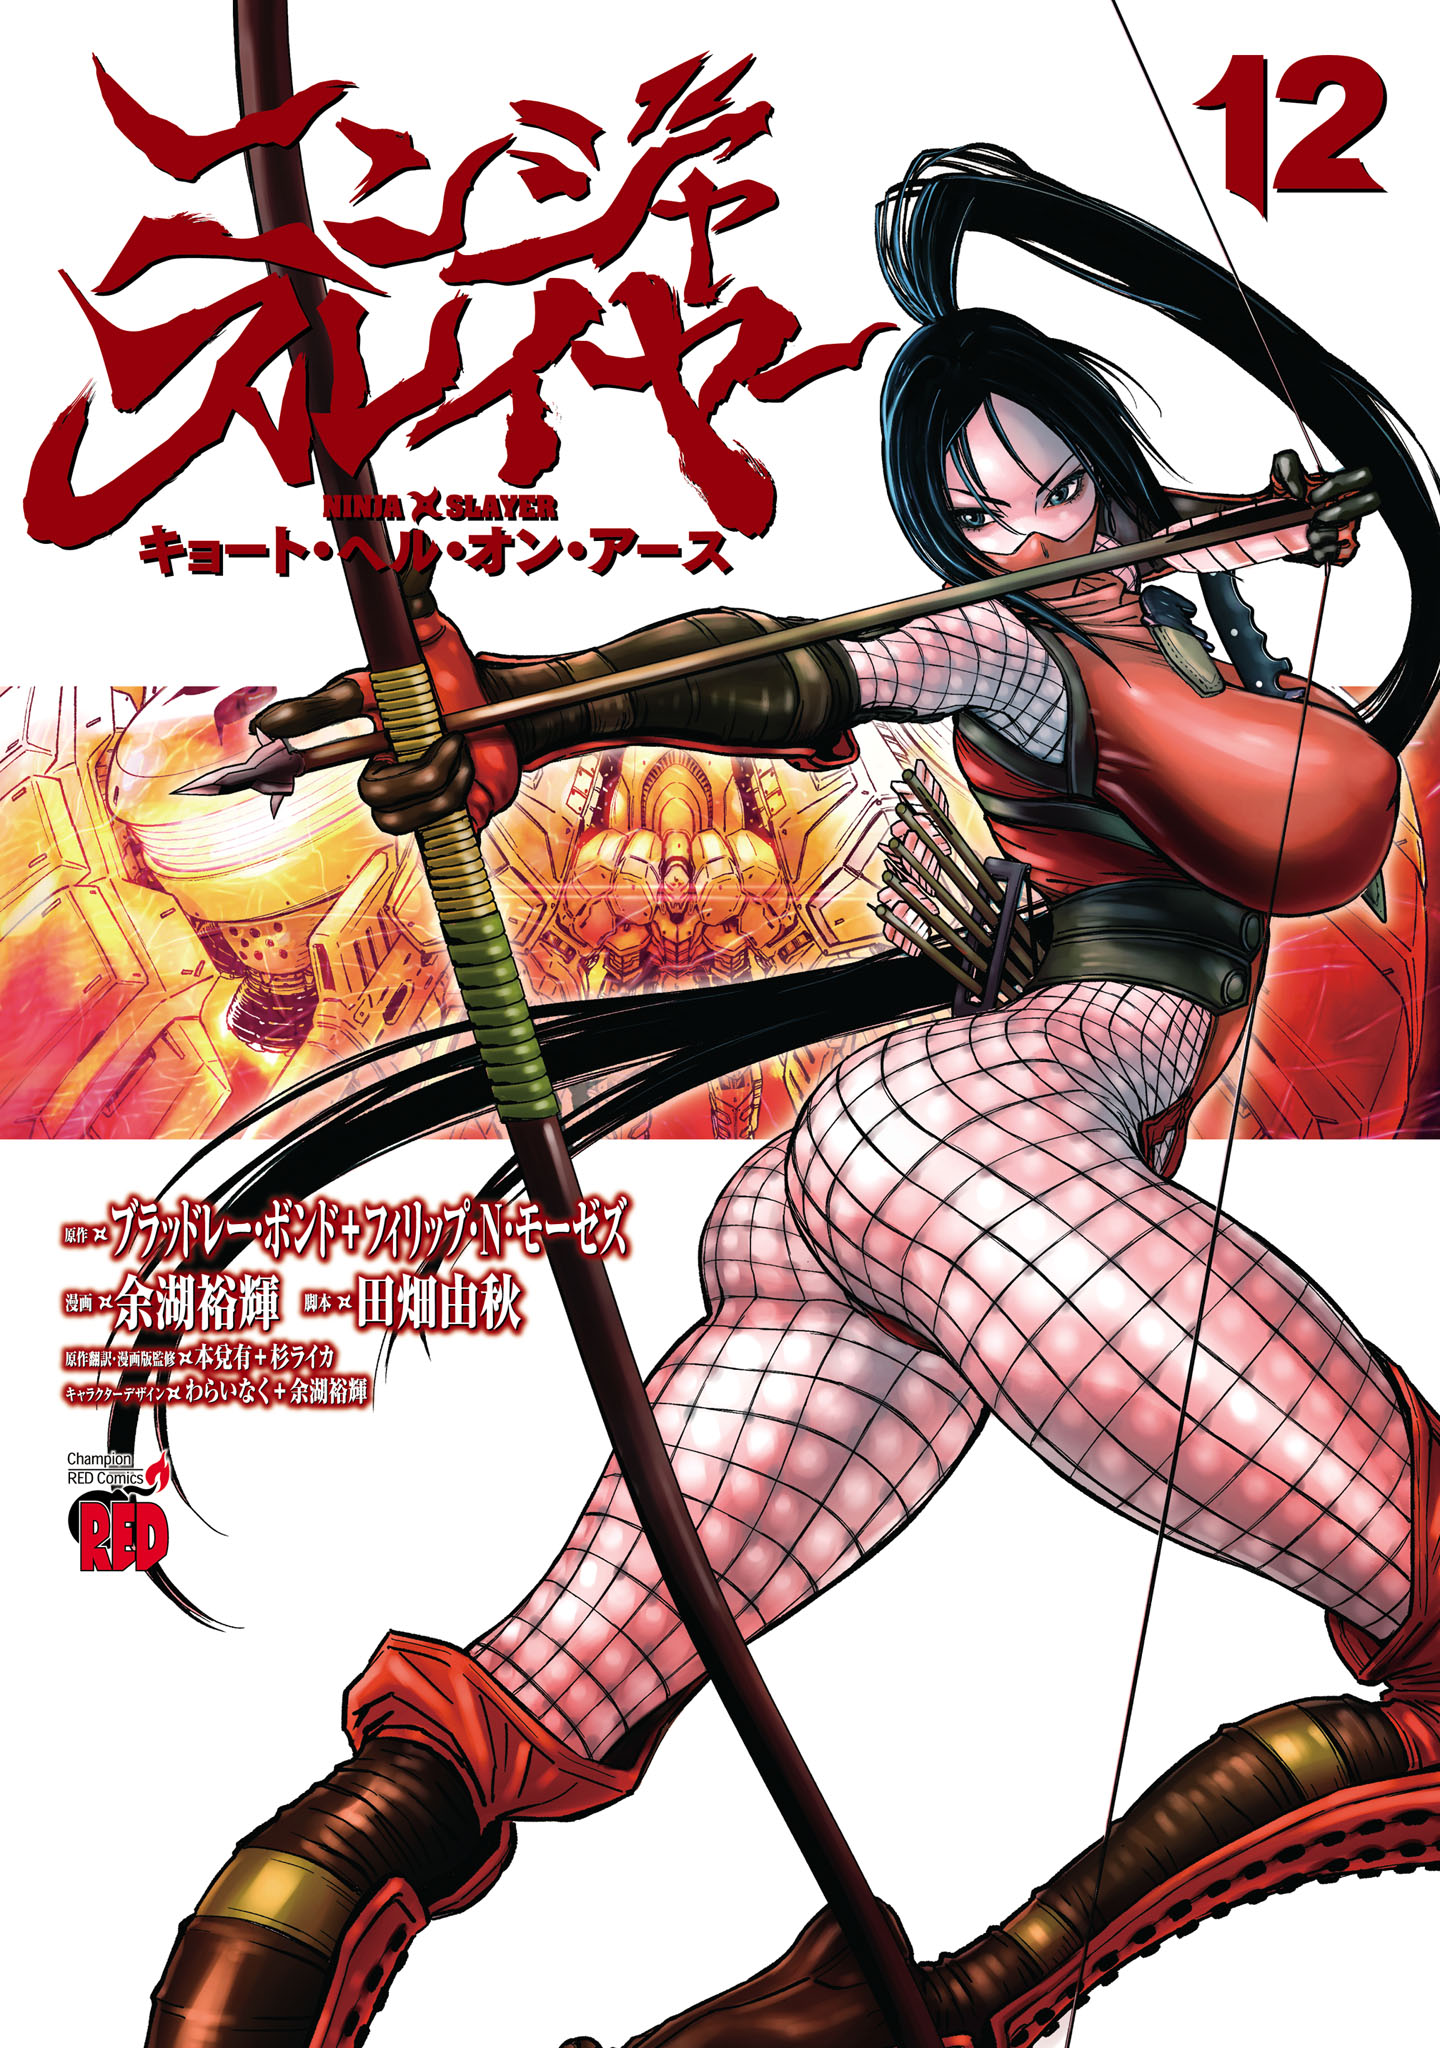 Ninja Slayer: Kyoto, Hell on Earth - MangaDex